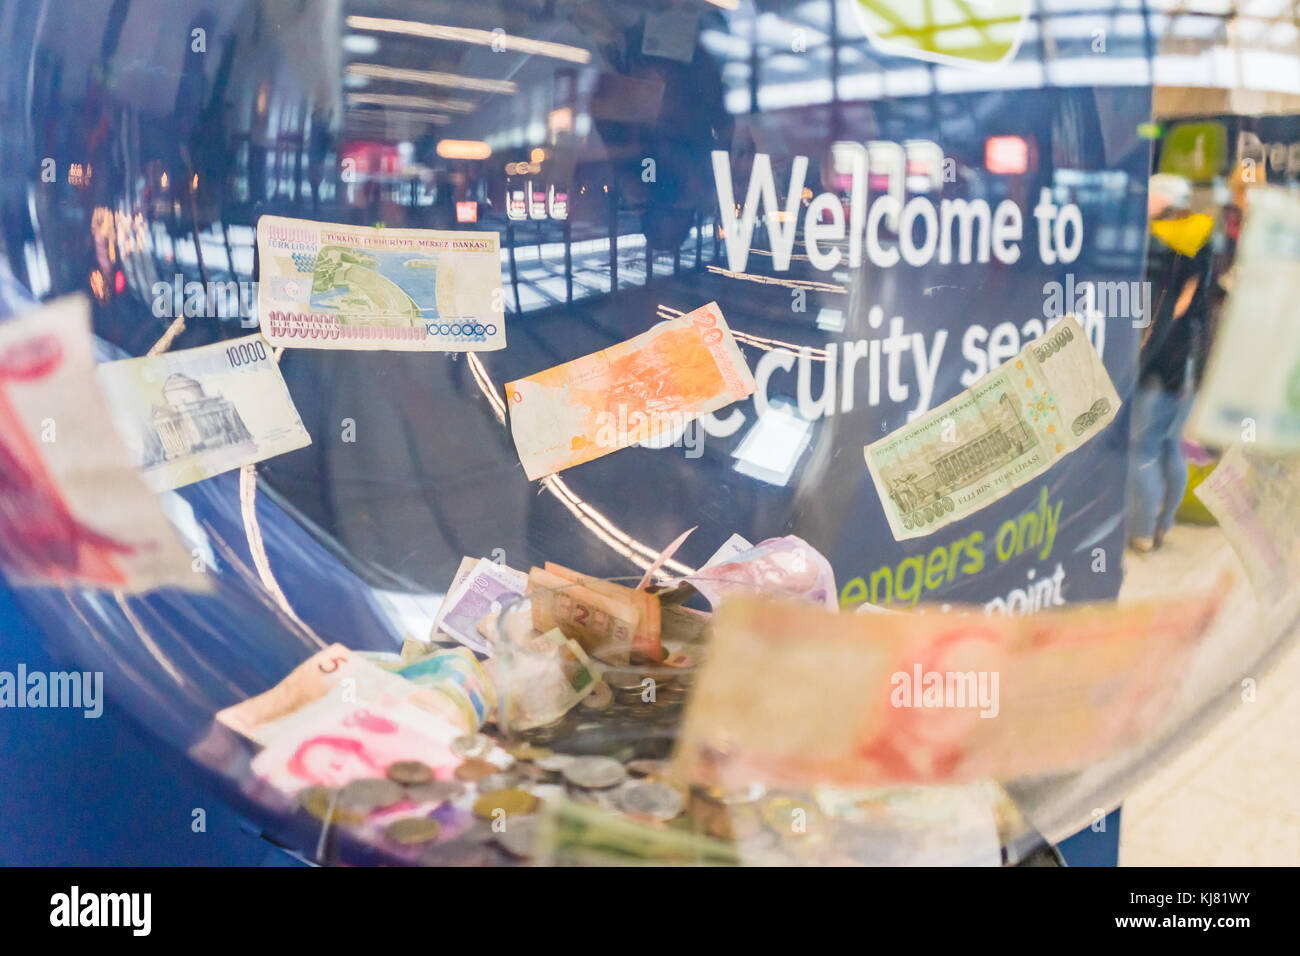 Monnaie étrangère donation box à l'aéroport de Gatwick, England, UK Banque D'Images